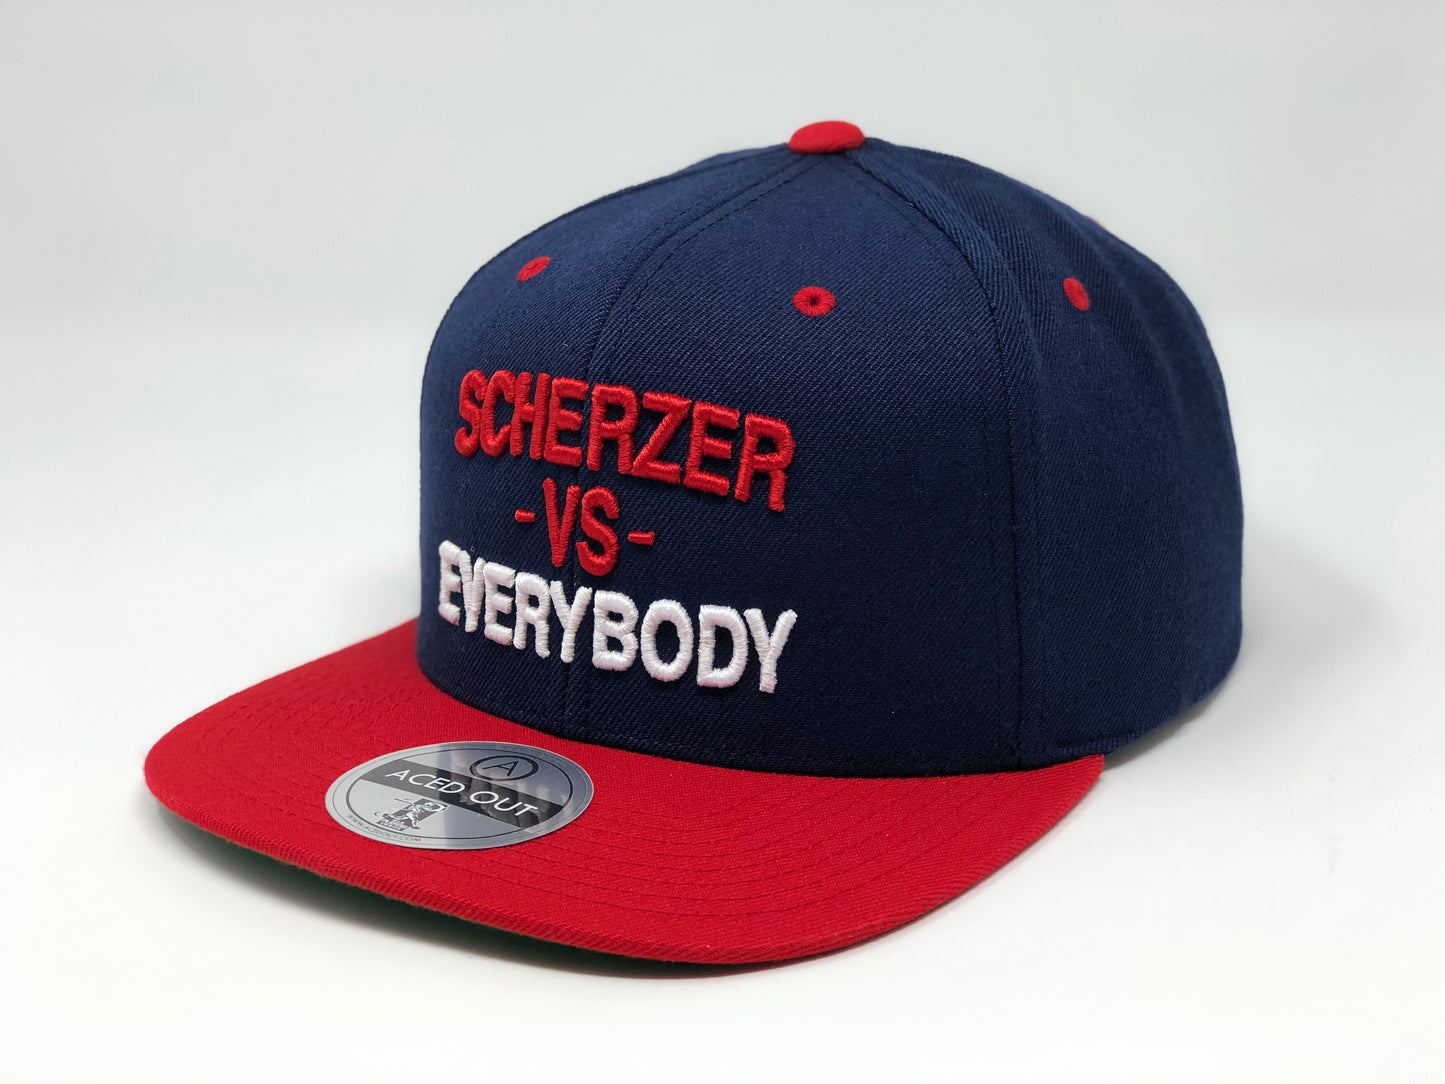 Max Scherzer vs EVERYBODY Hat - Navy/Red Snapback